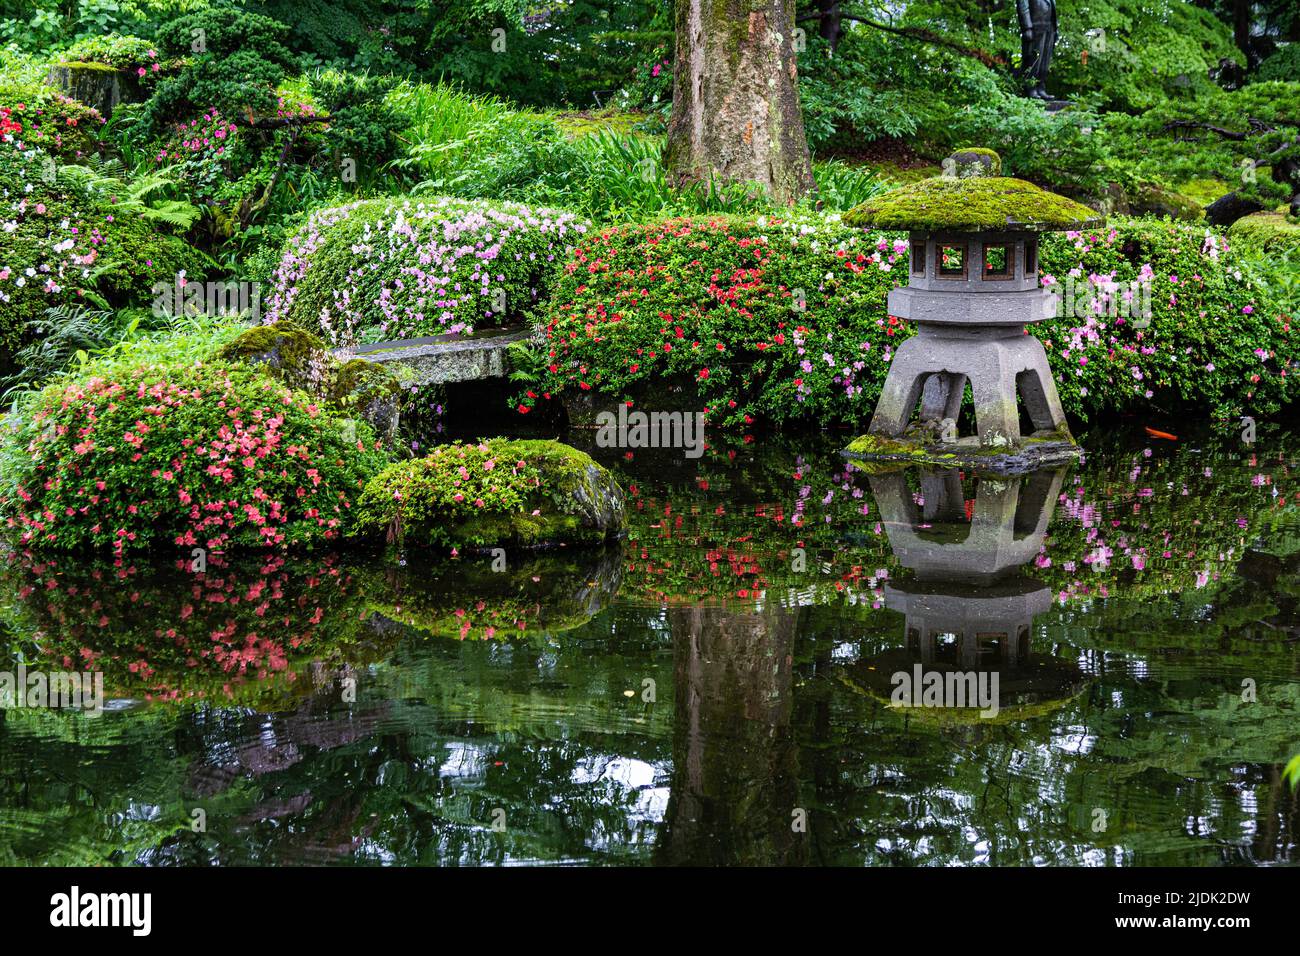 Unrei-an ist ein japanischer Garten, der auf dem Gelände der Aizu Homare Shuzo Sake Brennerei gefunden wurde. Der Garten wurde während der Showa-Zeit angelegt. Dieses g Stockfoto